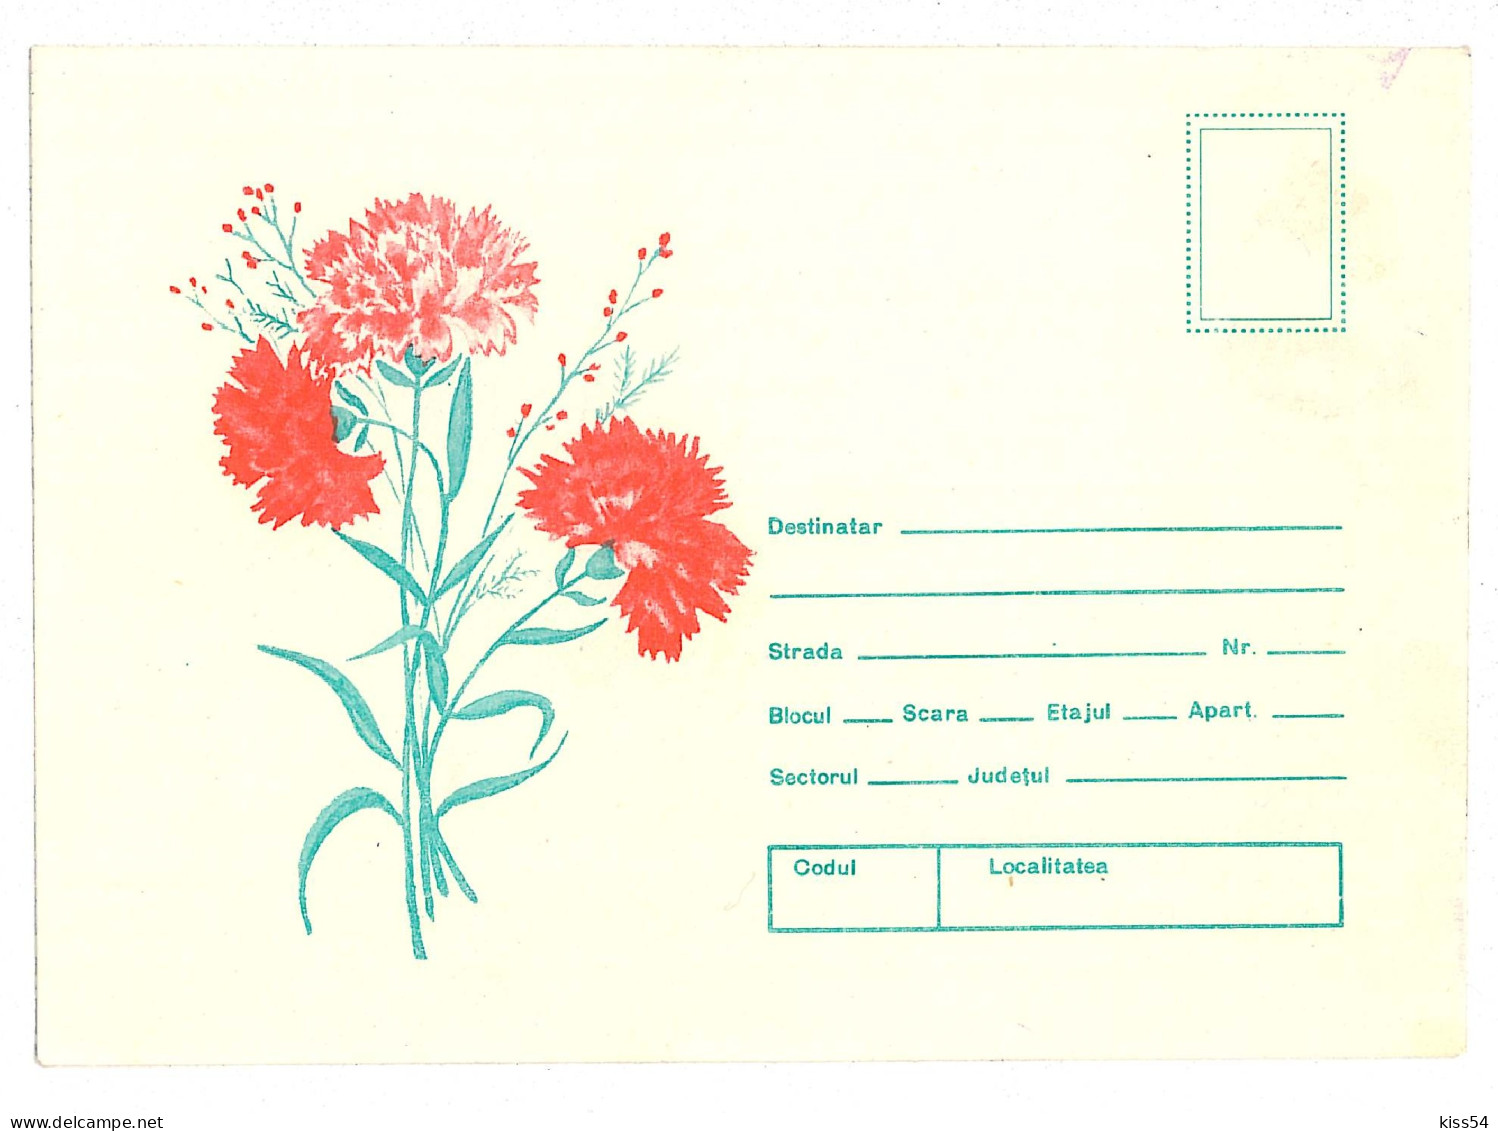 IP 92 - 82a FLOWERS, Carnations, Romania - Stationery - Unused - 1992 - Interi Postali